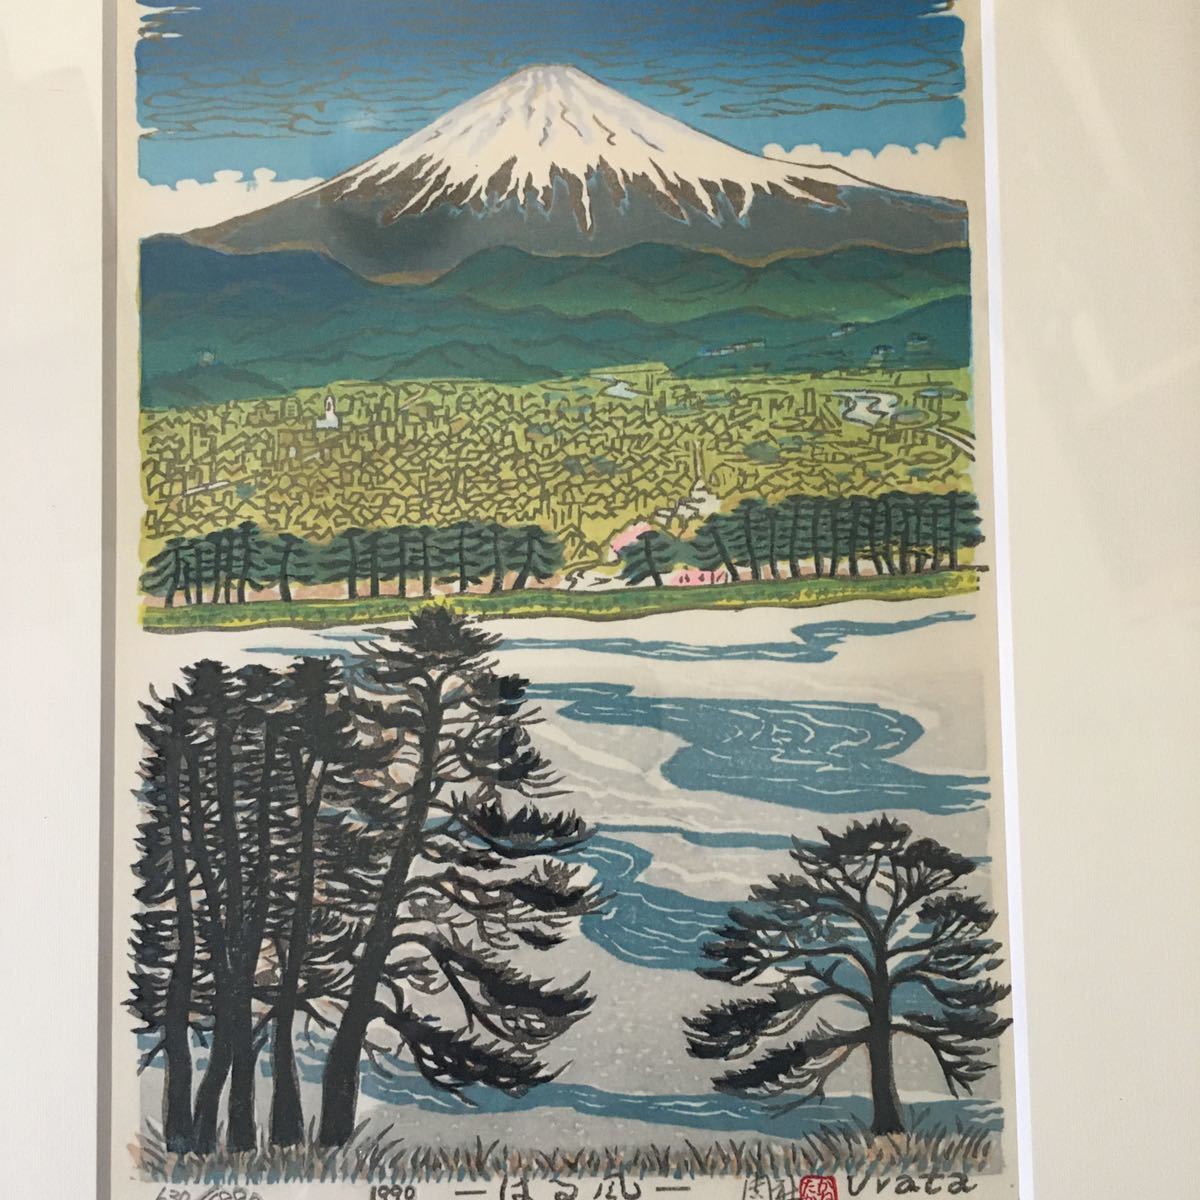 浦田周社 うらたかねたか 630/1880 はる風 木版画 1990年作 富士山 